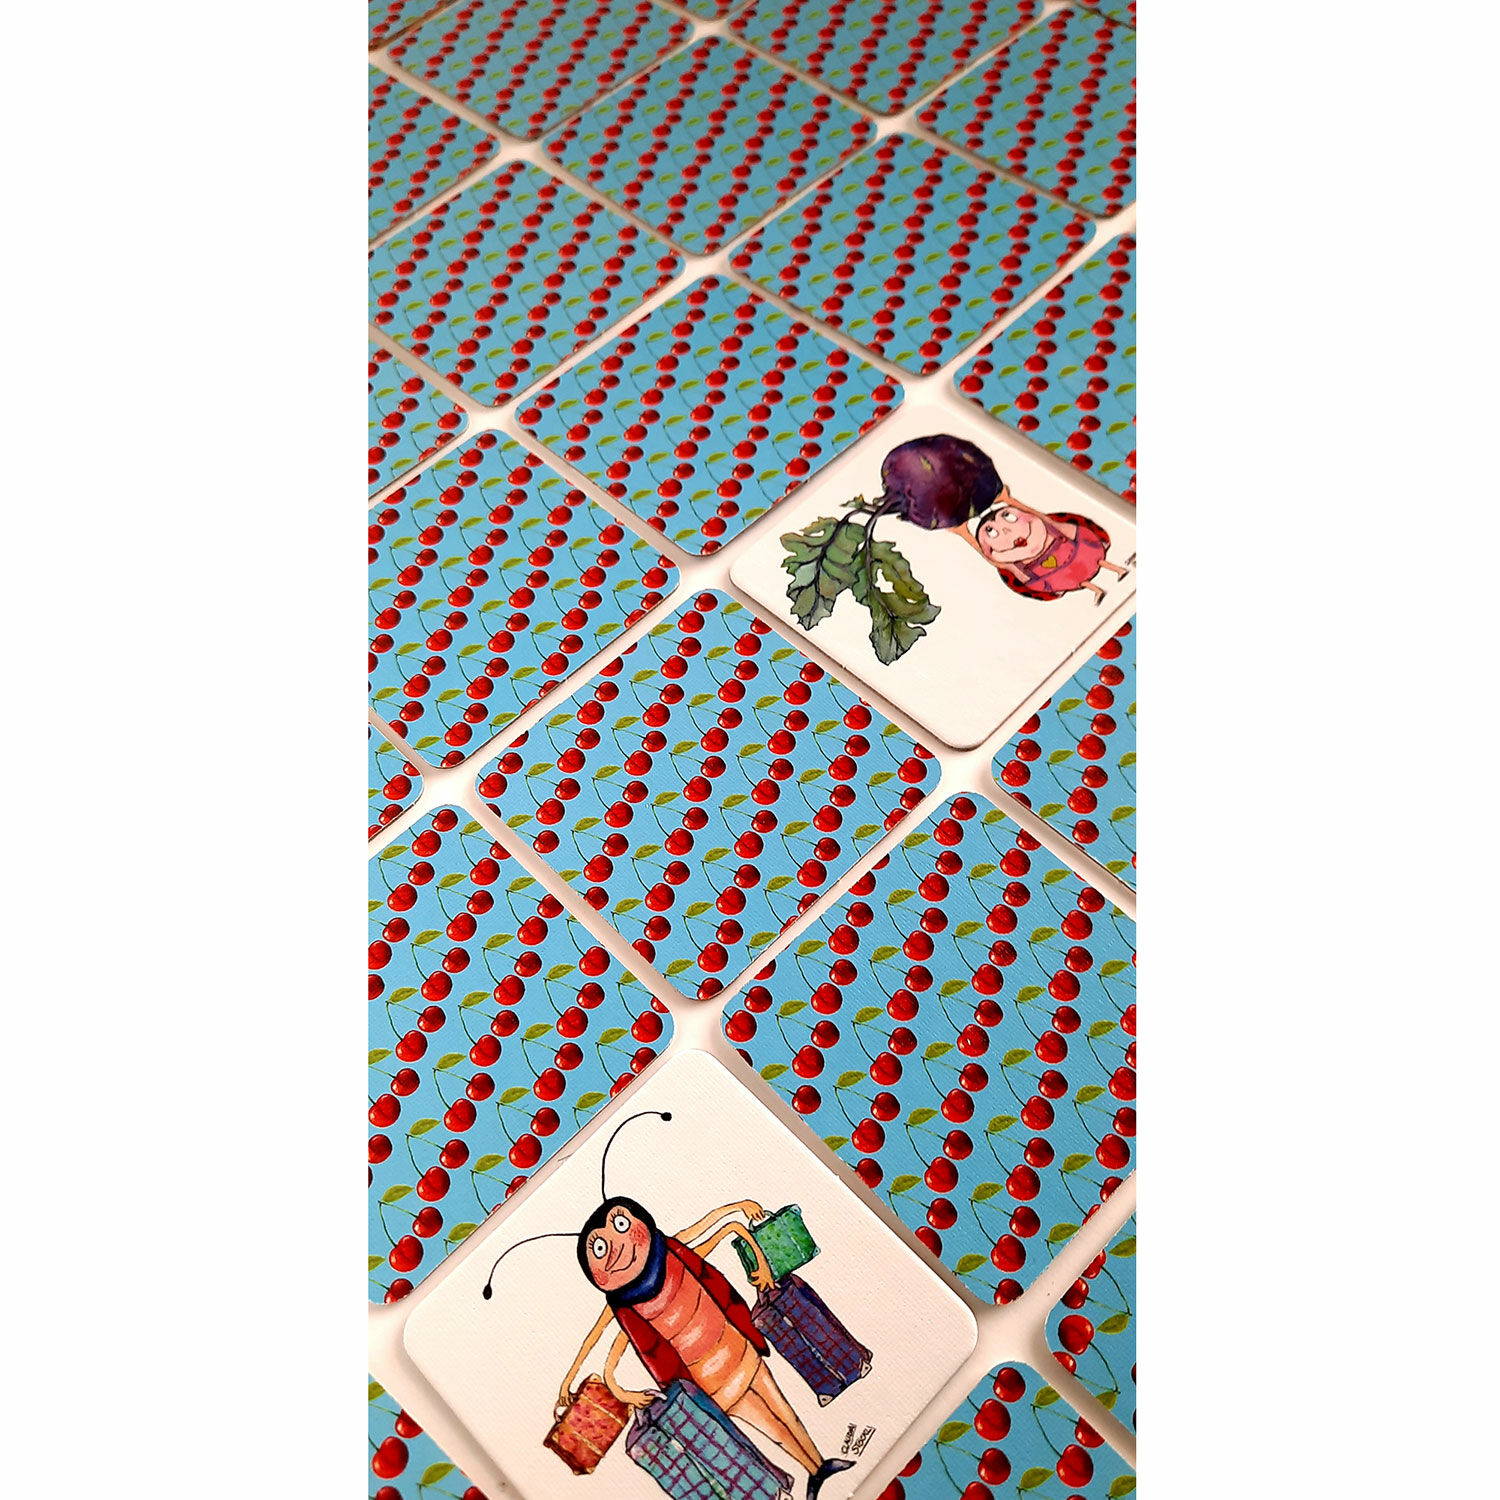 Karten-/Brettspiel "Kleine Knabberkäfer" (für Kinder ab 4 Jahren) von Logofrosch